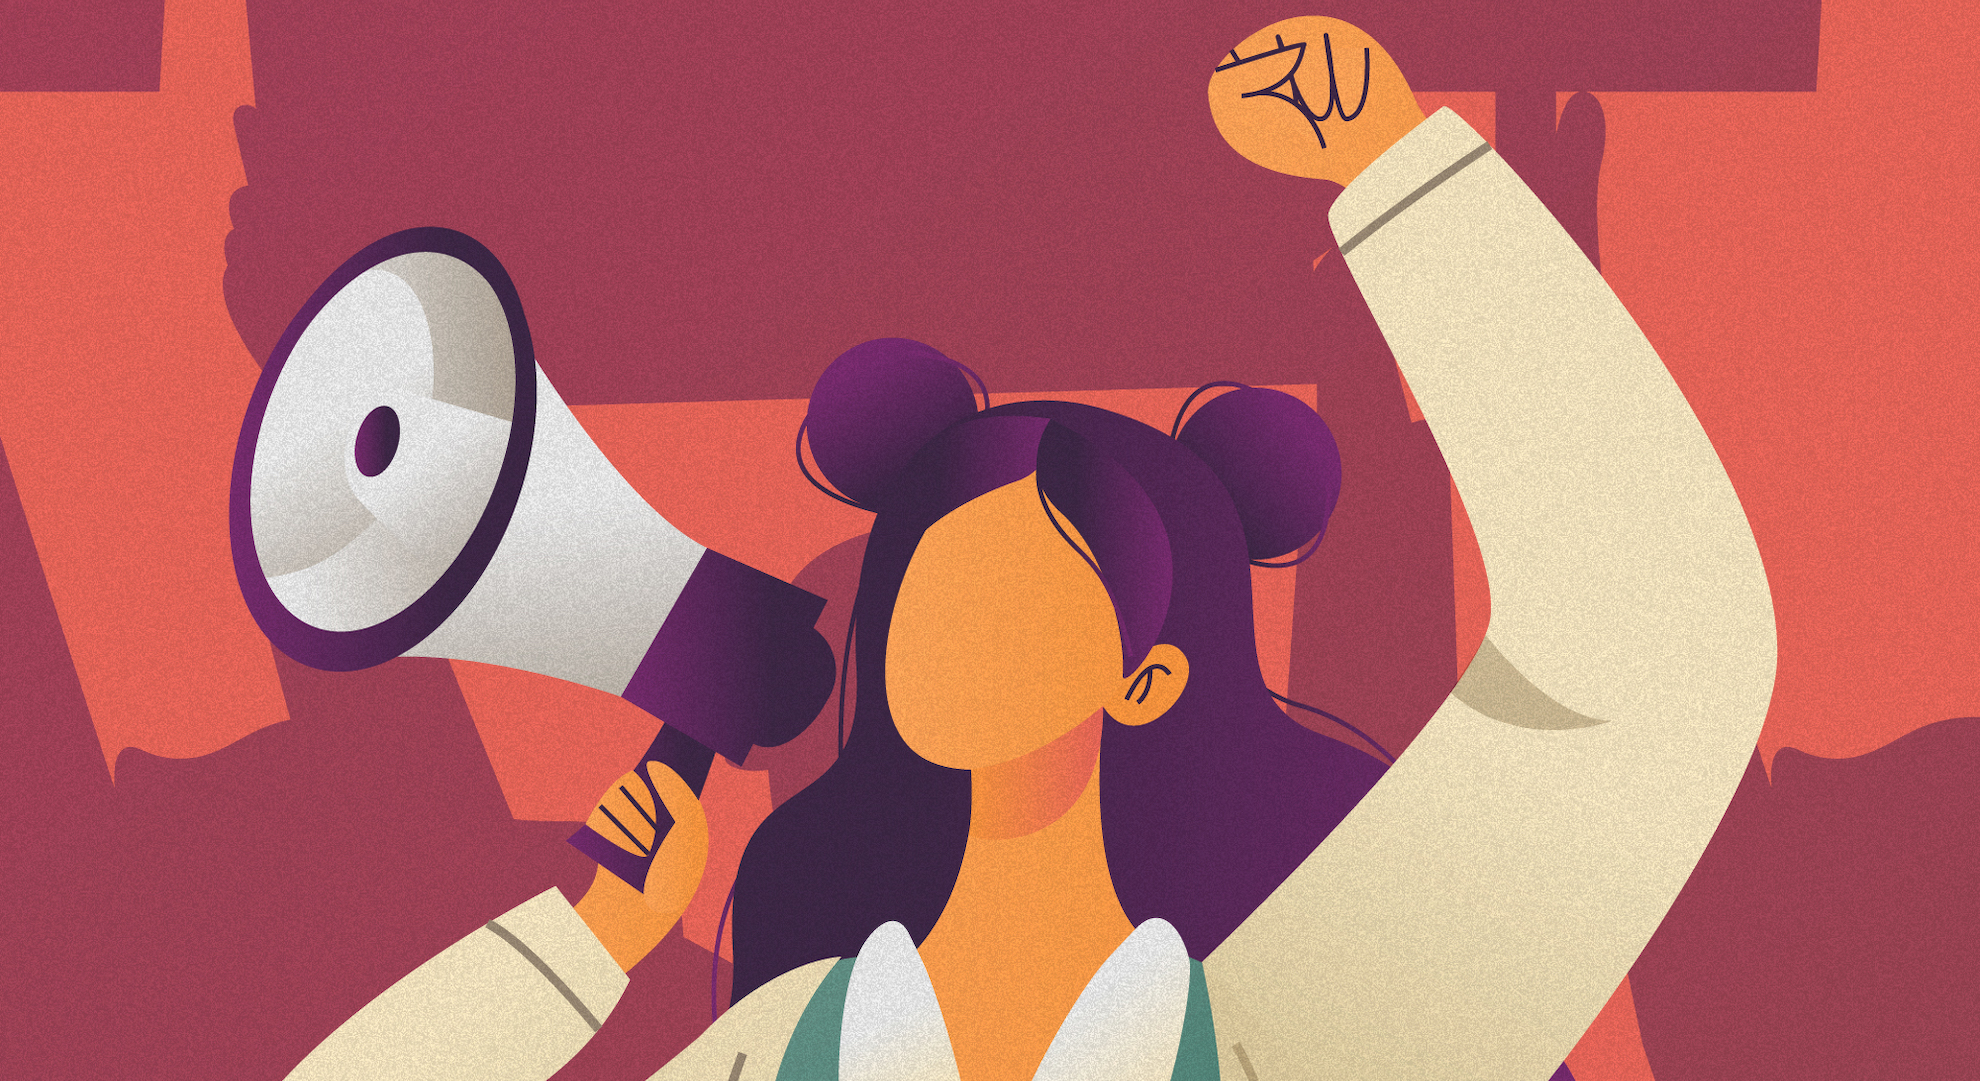 ilustration of girl raising her fist and holding bullhorn for international women's day